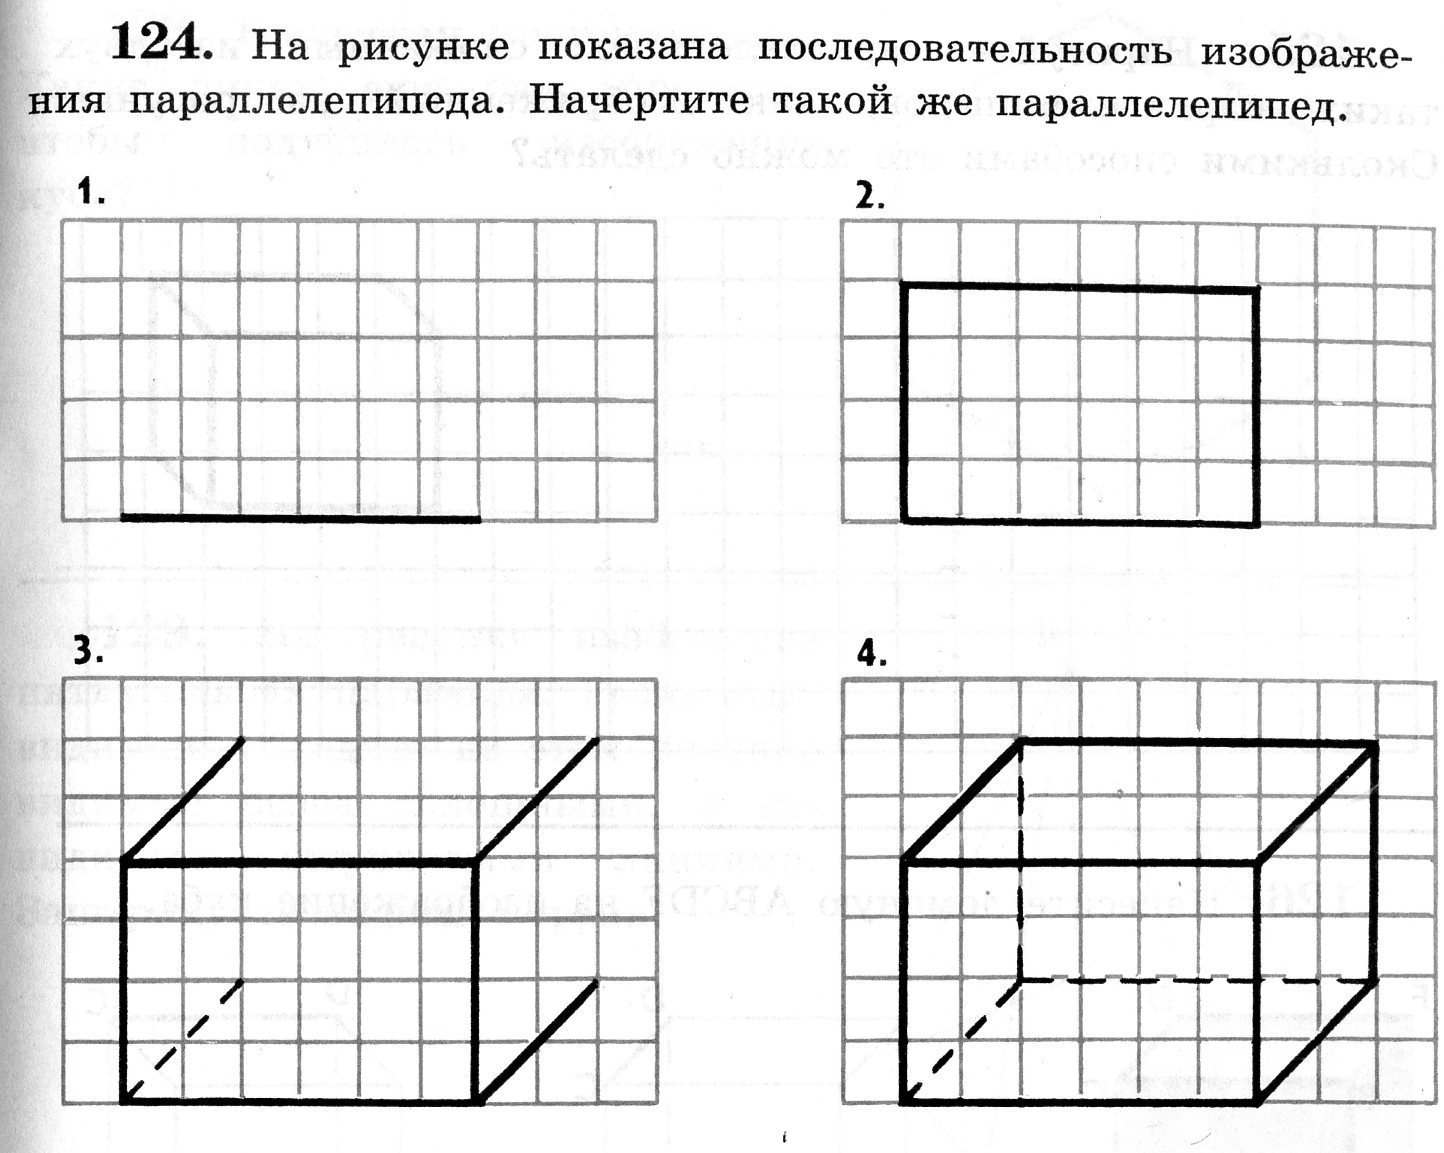 Алгоритм построения куба. Как начертить куб параллелепипед. Нарисовать чертеж параллелепипеда. Как начертить параллелепипед поэтапно. Как начертить прямоугольный параллелепипед по клеточкам.